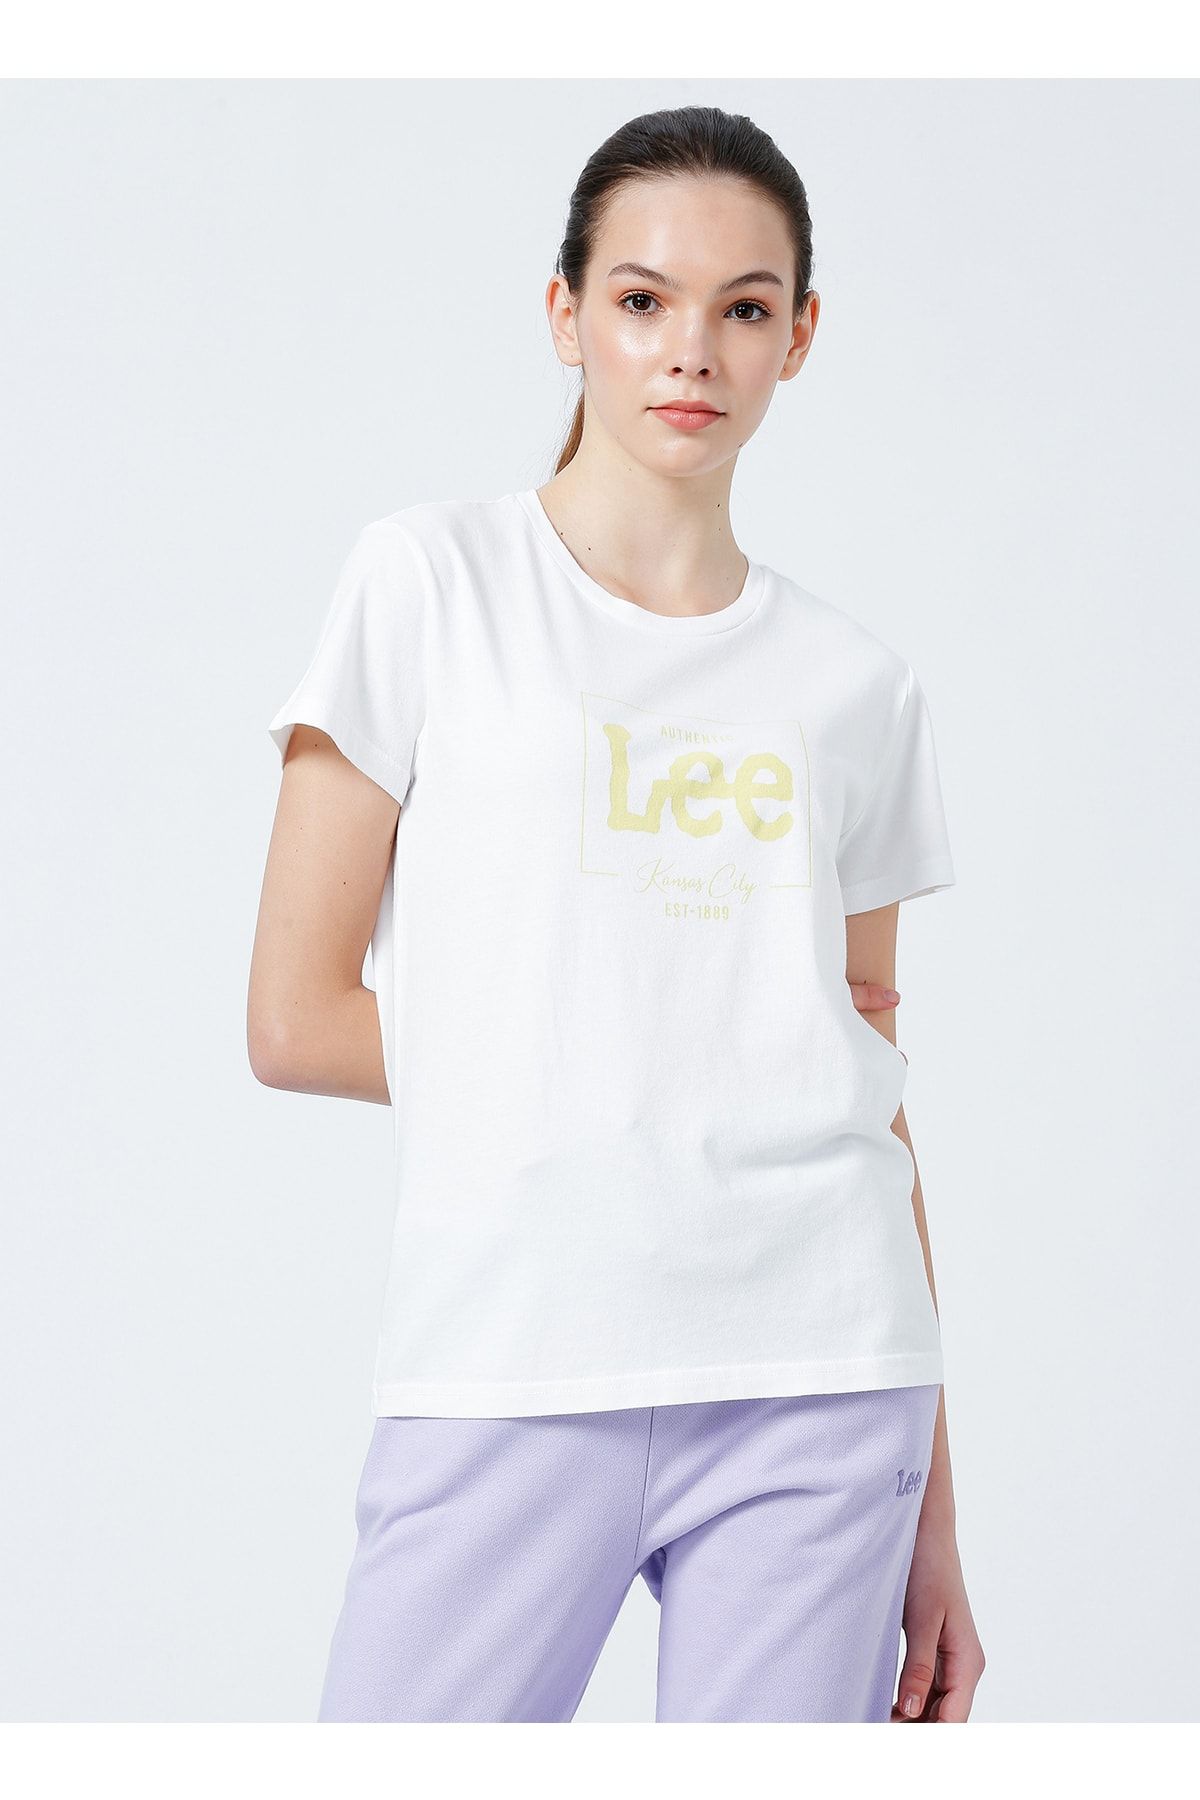 Lee T-shirt, M, Beyaz